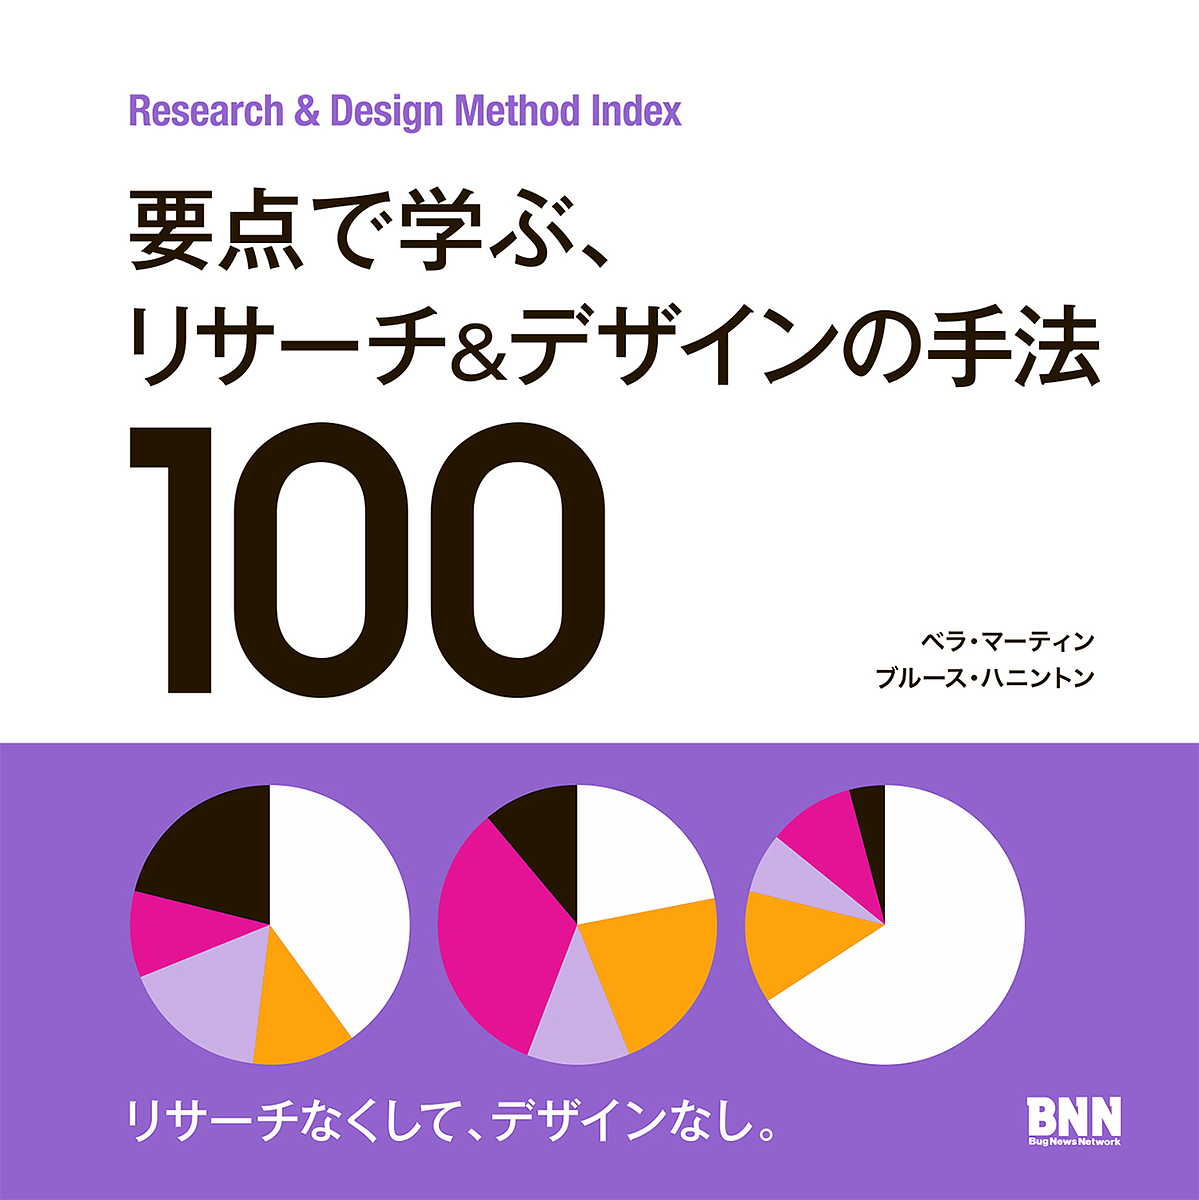 要点で学ぶ、リサーチ & デザインの手法100 Research & Design Method Index/ベラ・マーティン